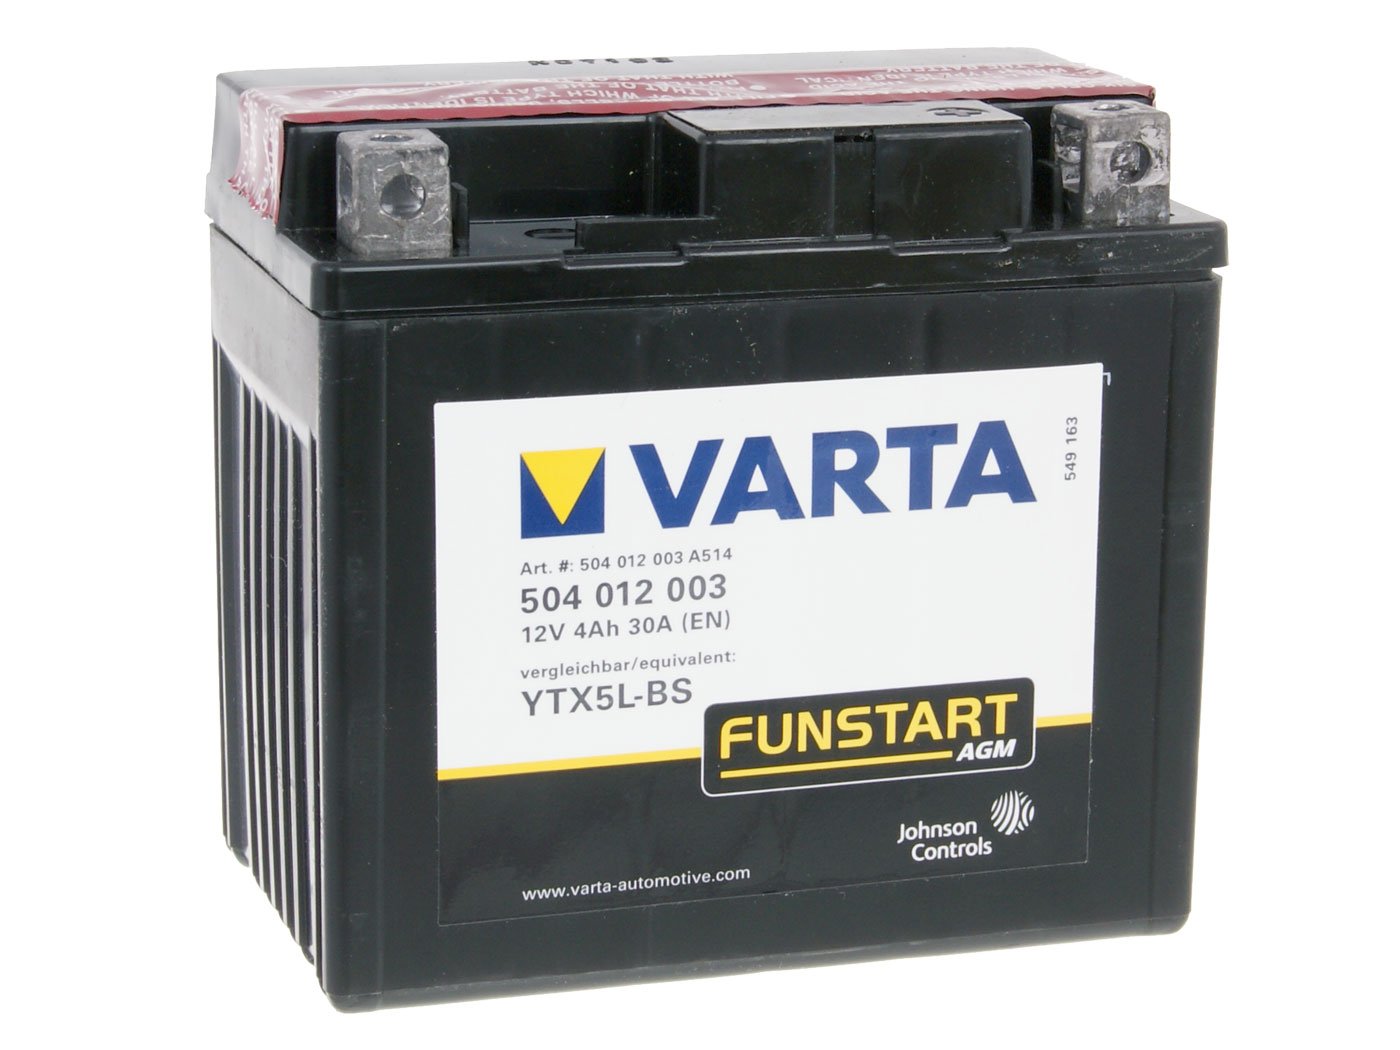 58008 VARTA 504012003A514 Powersports AGM Motorradbatterie, 12 V, 4Ah, YTX5L-BS von Varta